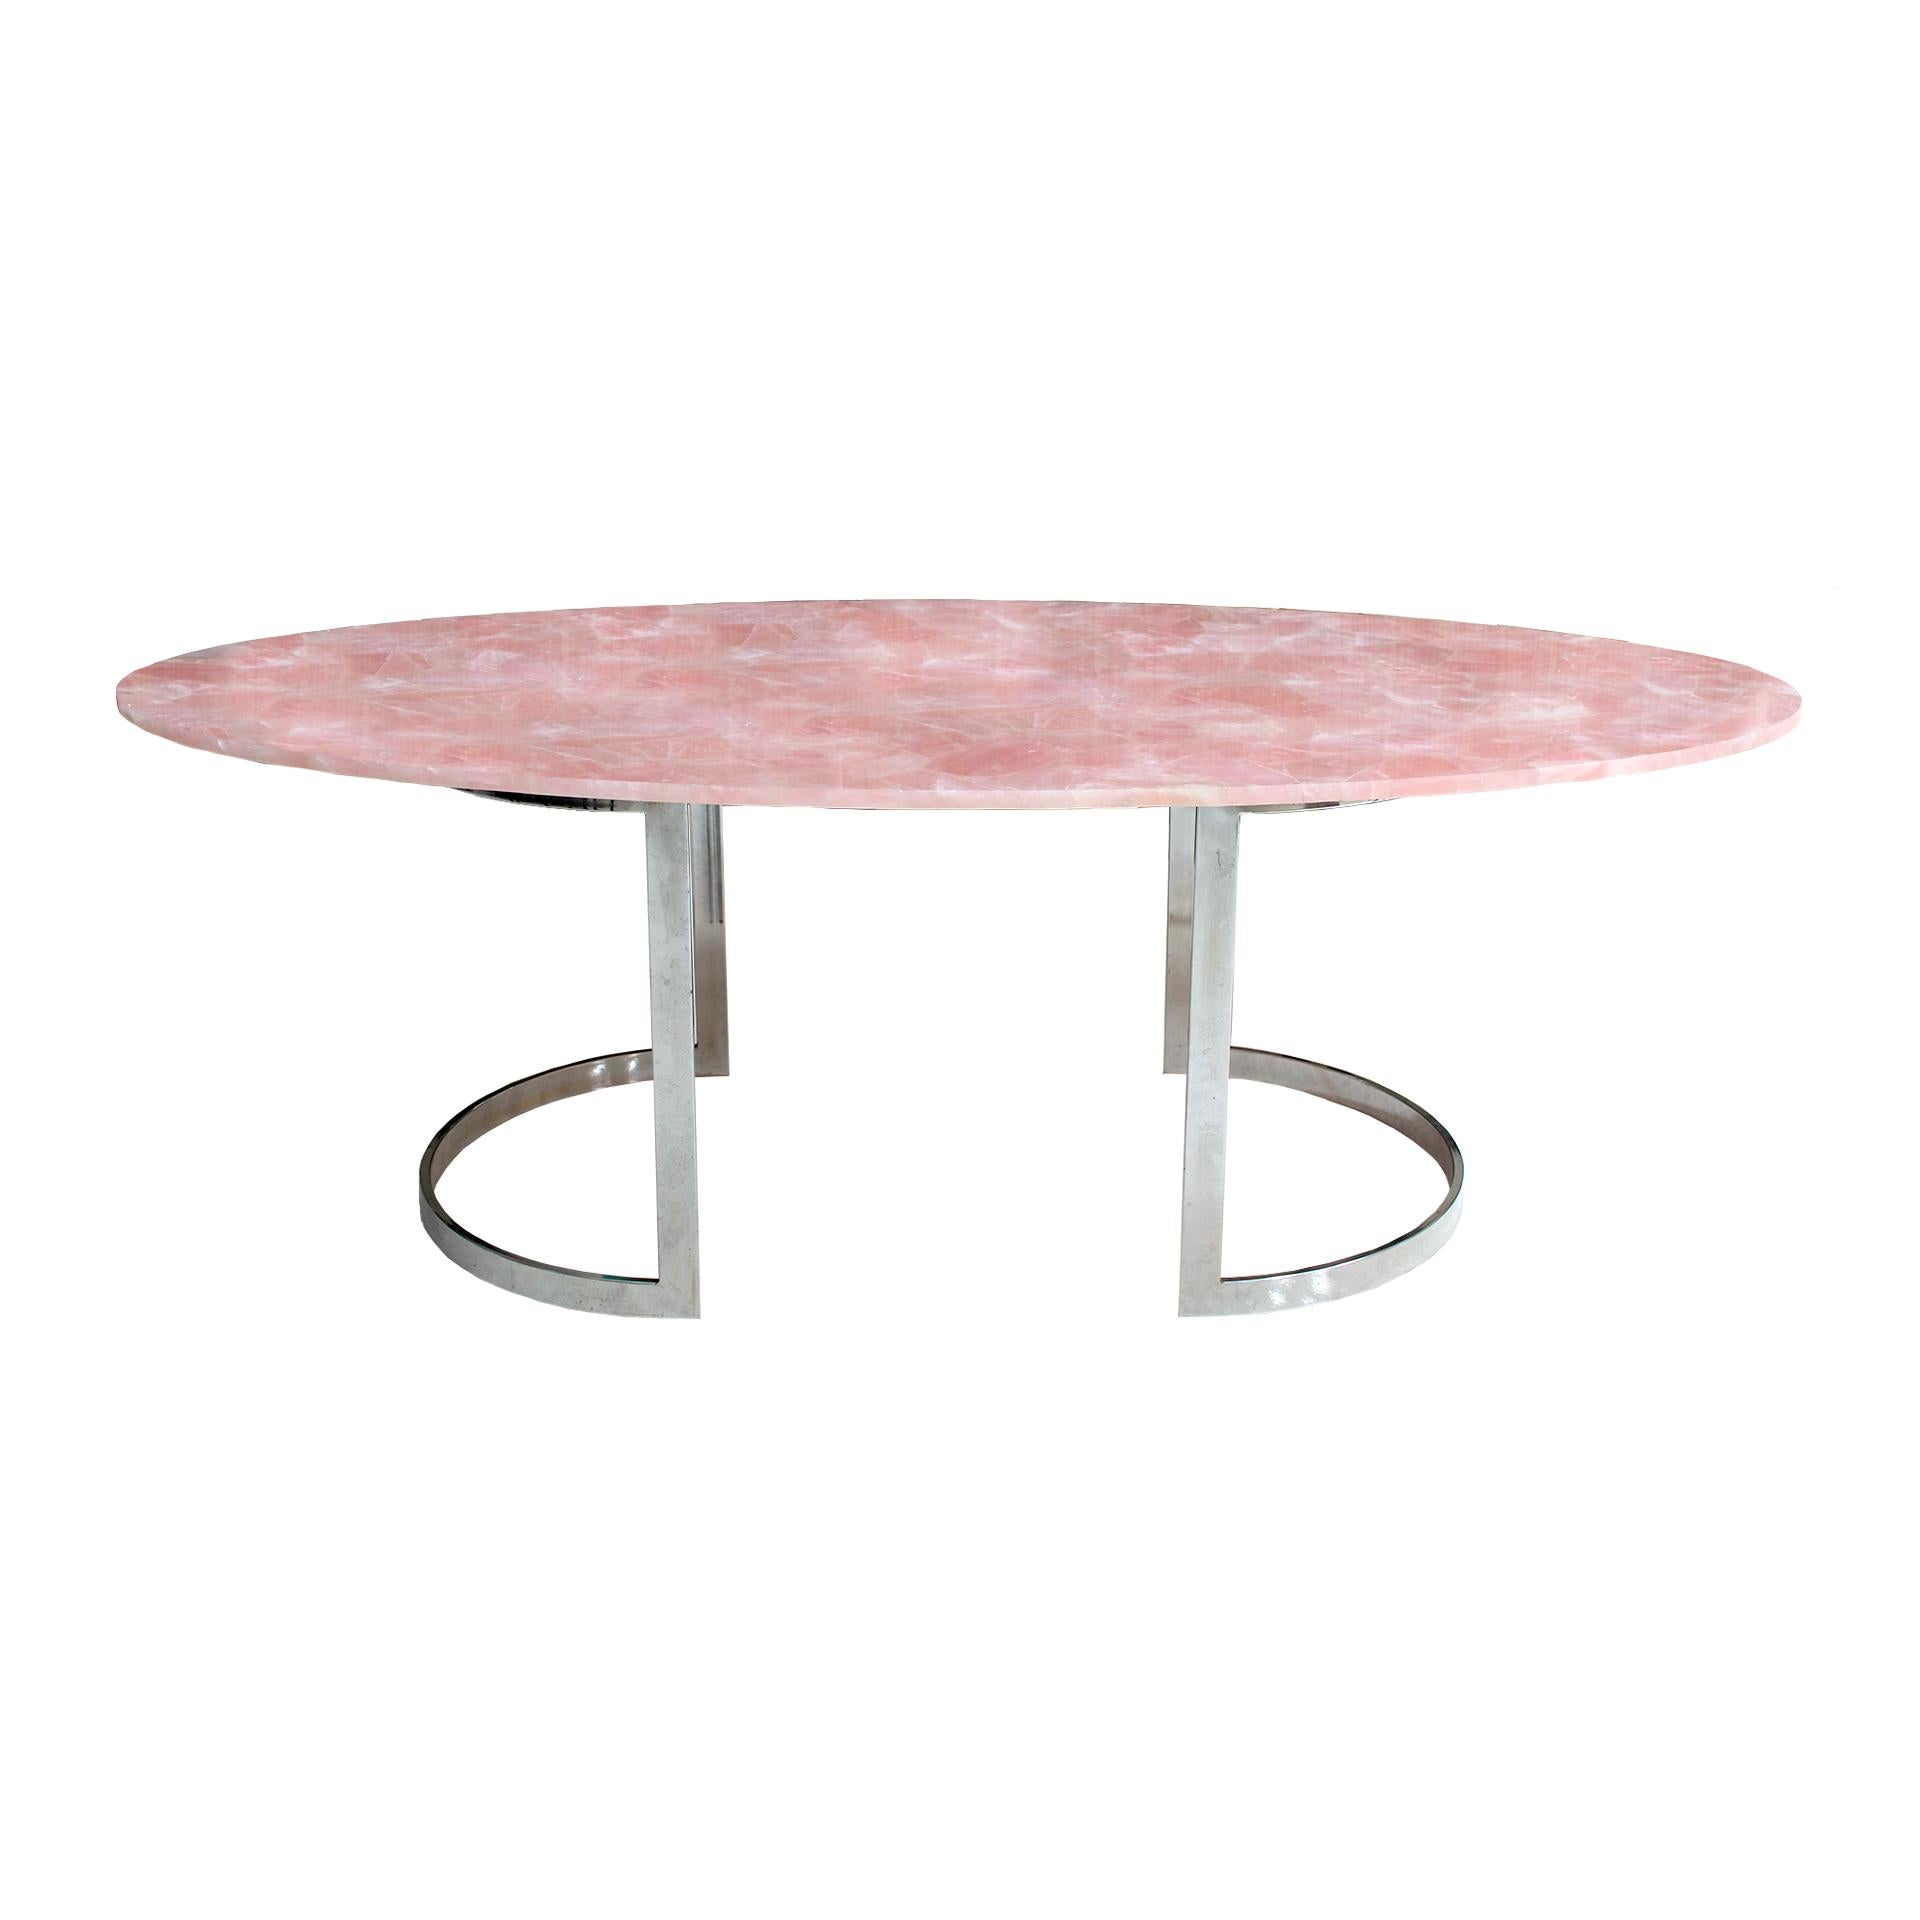 Table de salle à manger conçue par I.A. Studio composée de deux bases incurvées sculpturales en acier et d'une marqueterie ovale en quartz rose. Cette table peut accueillir jusqu'à huit personnes.

Notre principal objectif est la satisfaction du